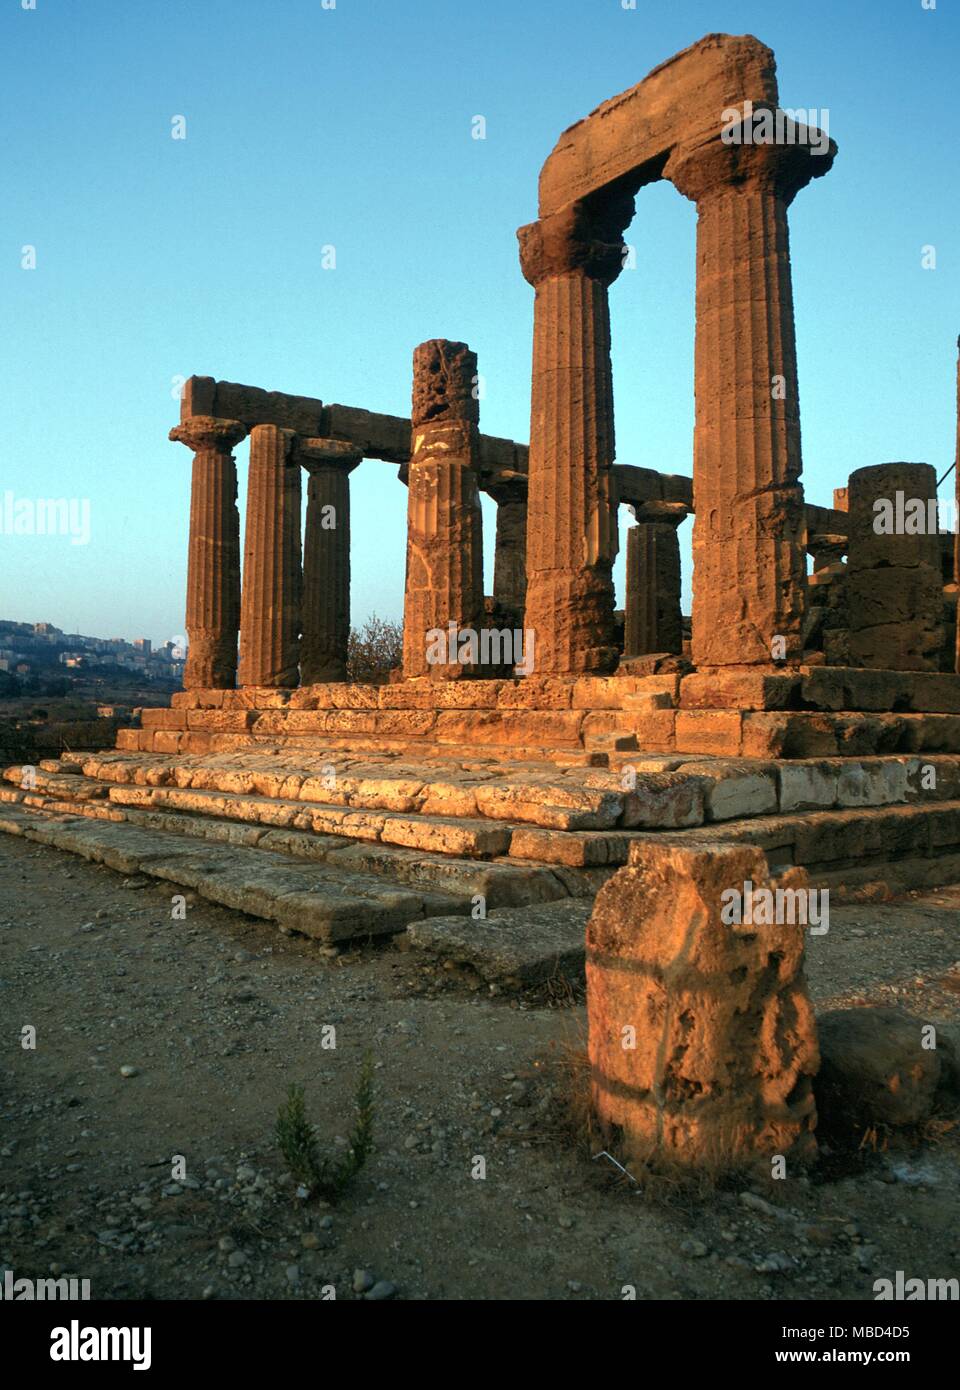 La mythologie grecque. Temple de Junon. Le Temple de Hera Lacinia, ou Junon, à Agrigente, Sicile, construite vers 440 avant JC. À l'extrémité est un autel, utilisé pour des sacrifices d'animaux. Banque D'Images